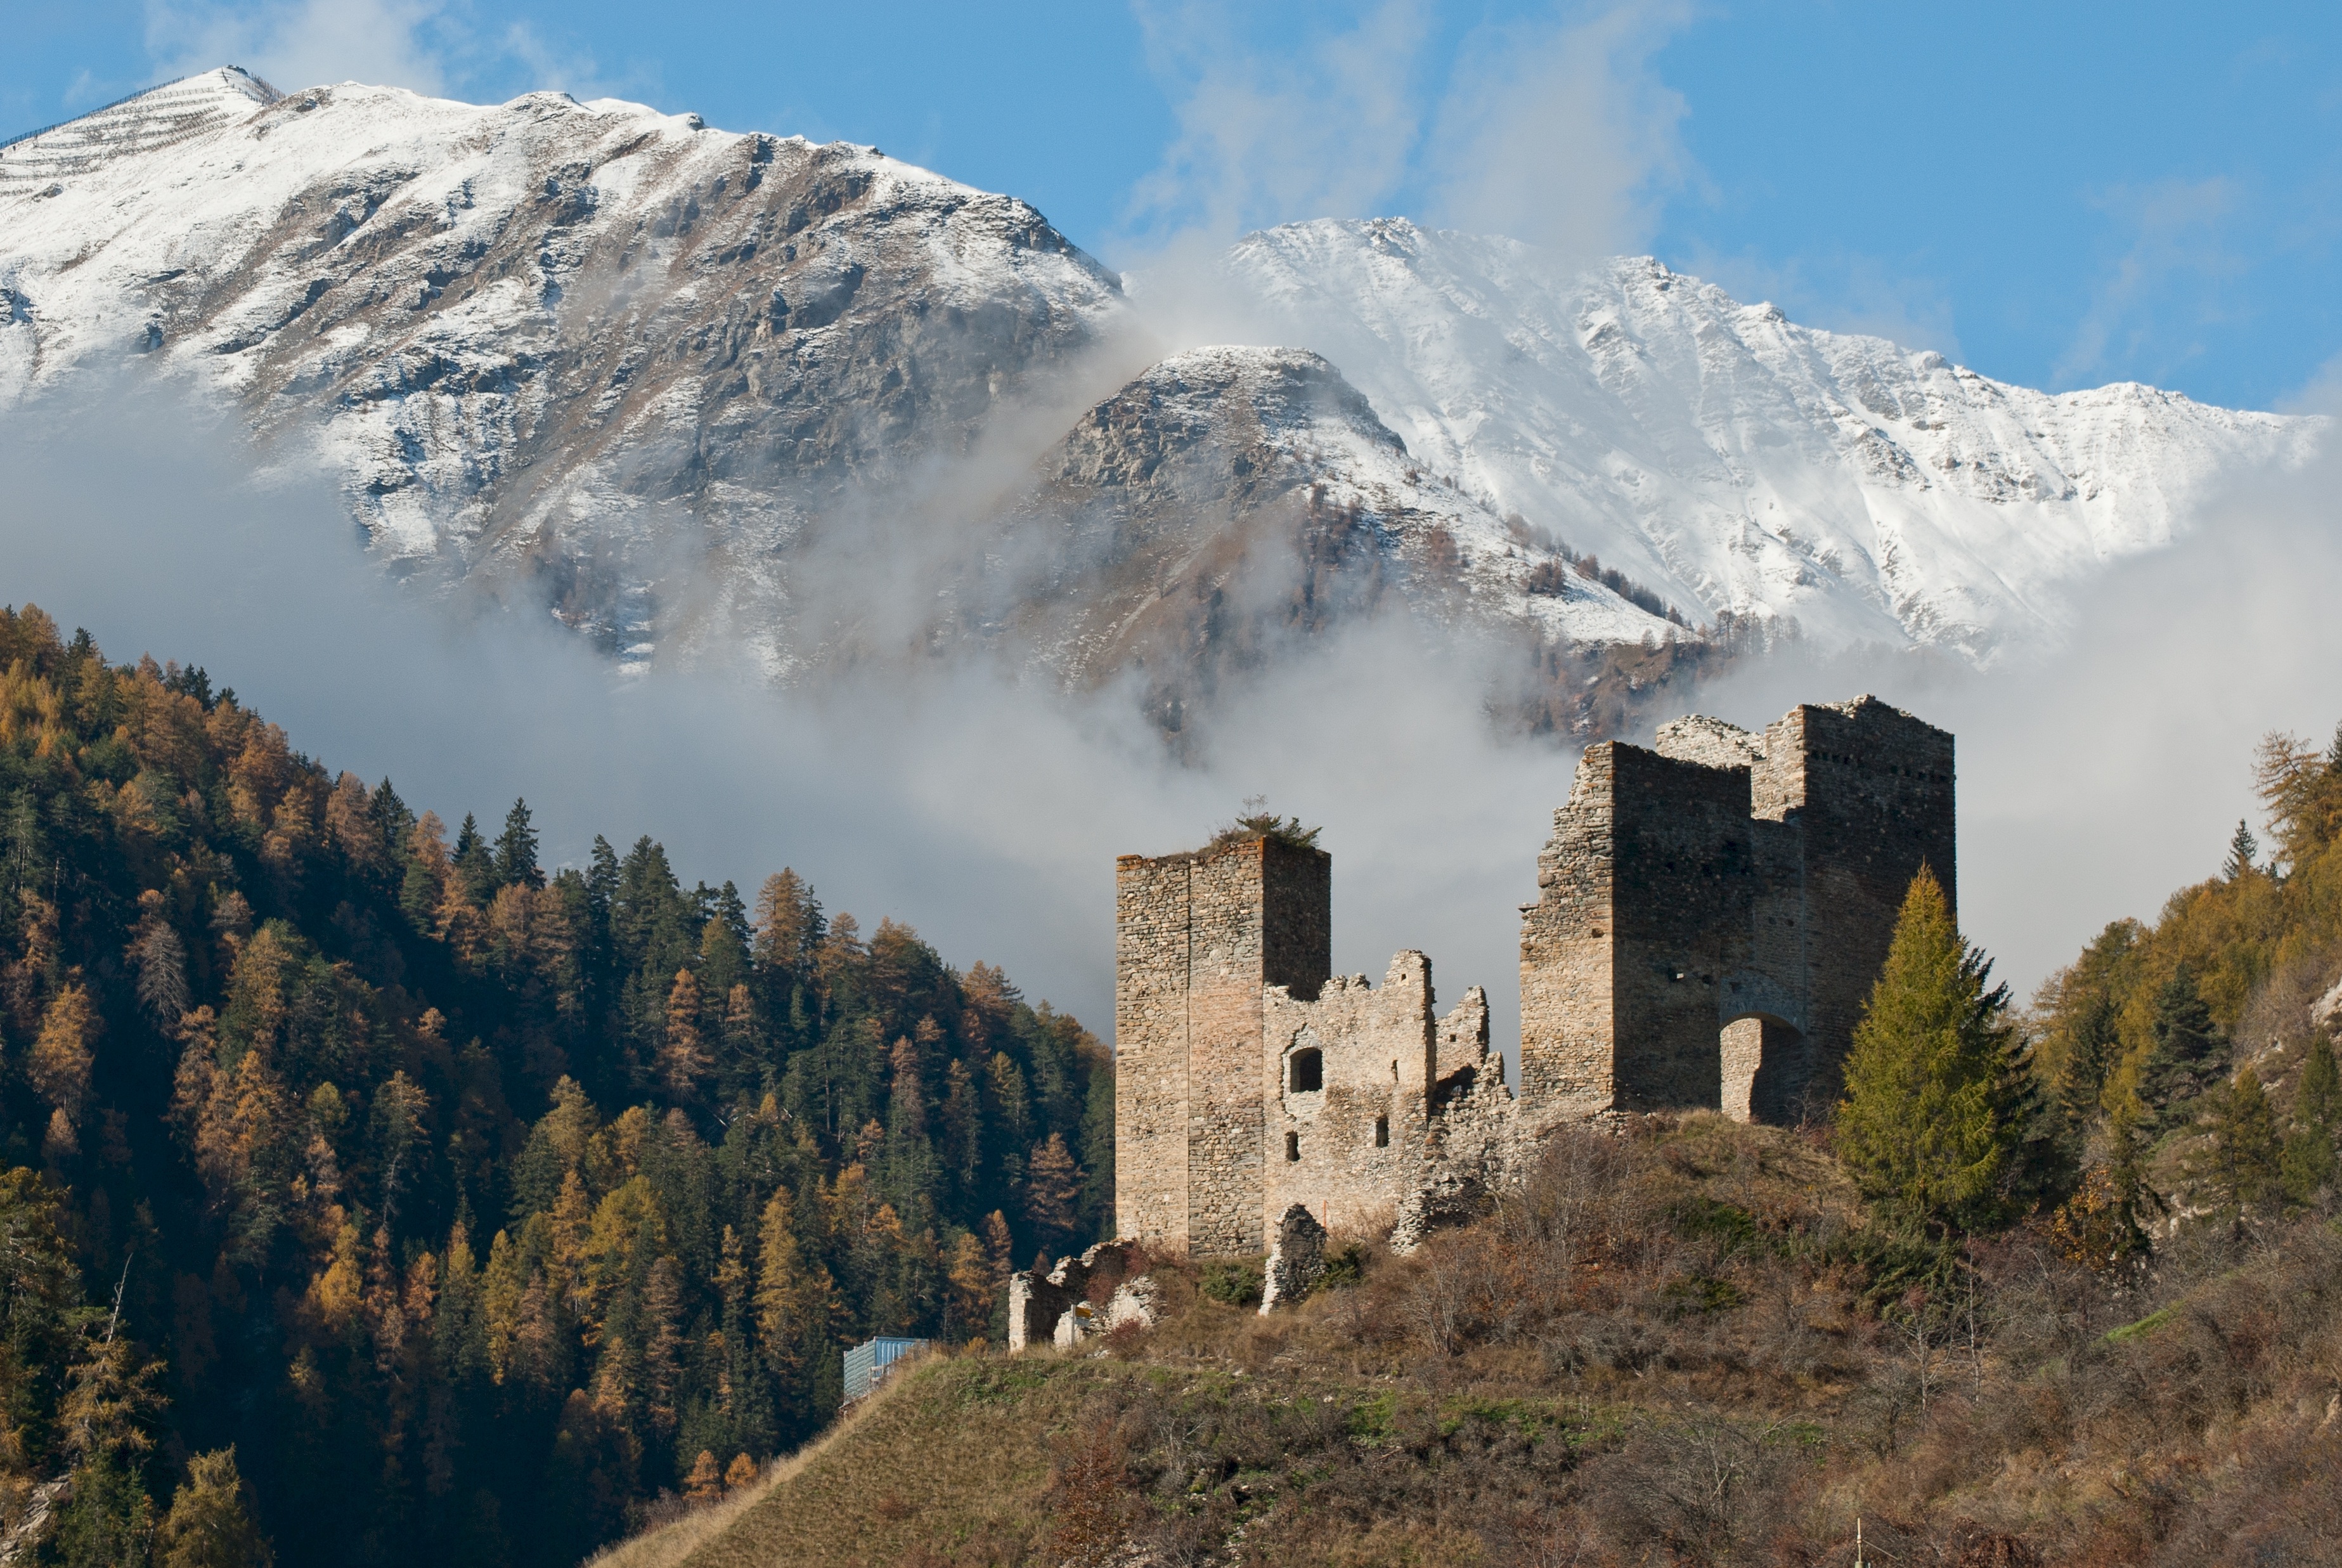 Tschanuff Castle, Castle, Construction, Landscape, Mountain, HQ Photo